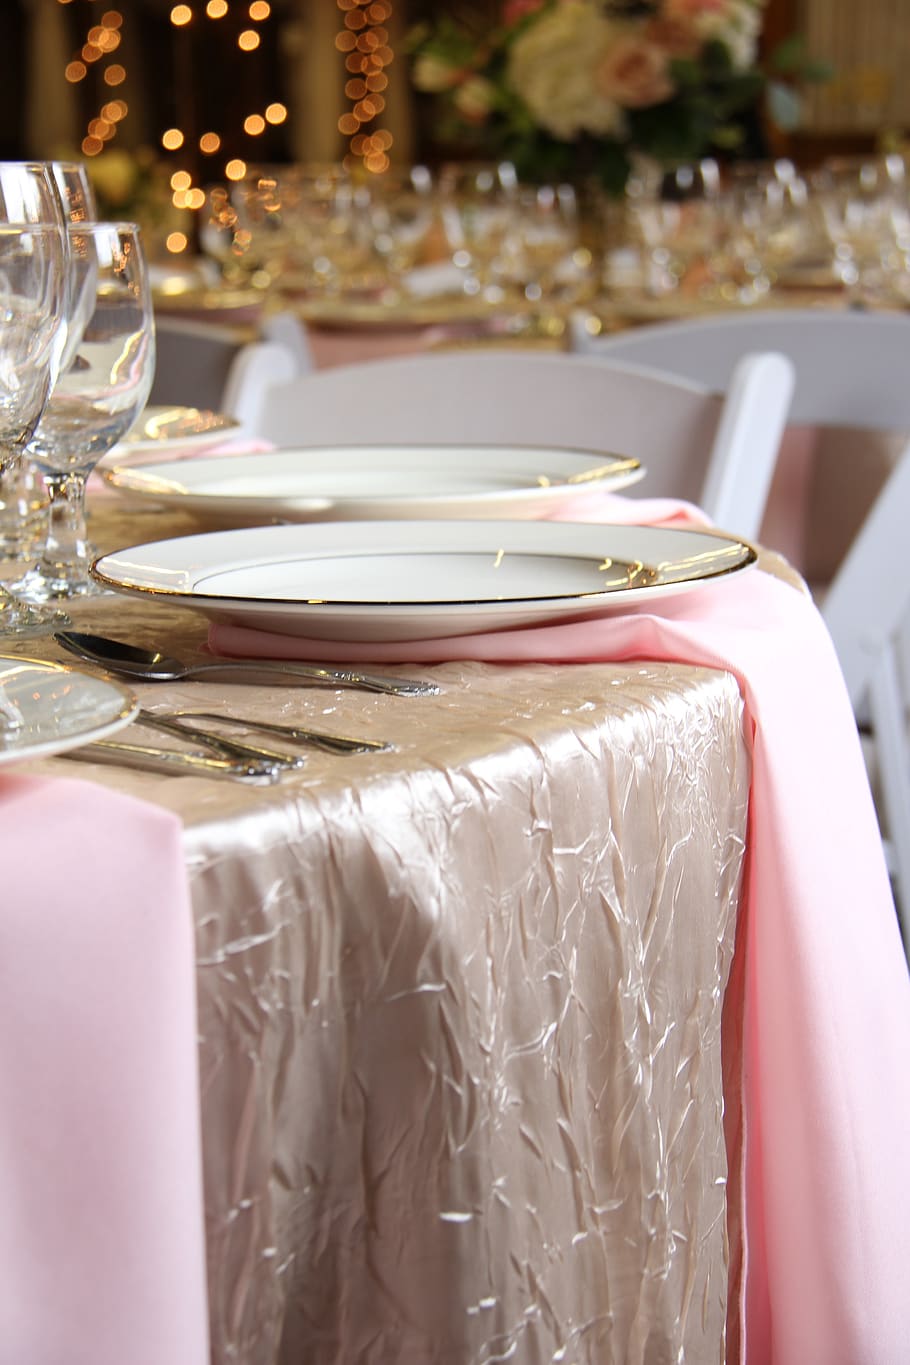 table setting, napkins, plate, napkin, restaurant, table, dining, fork, dinner, wedding